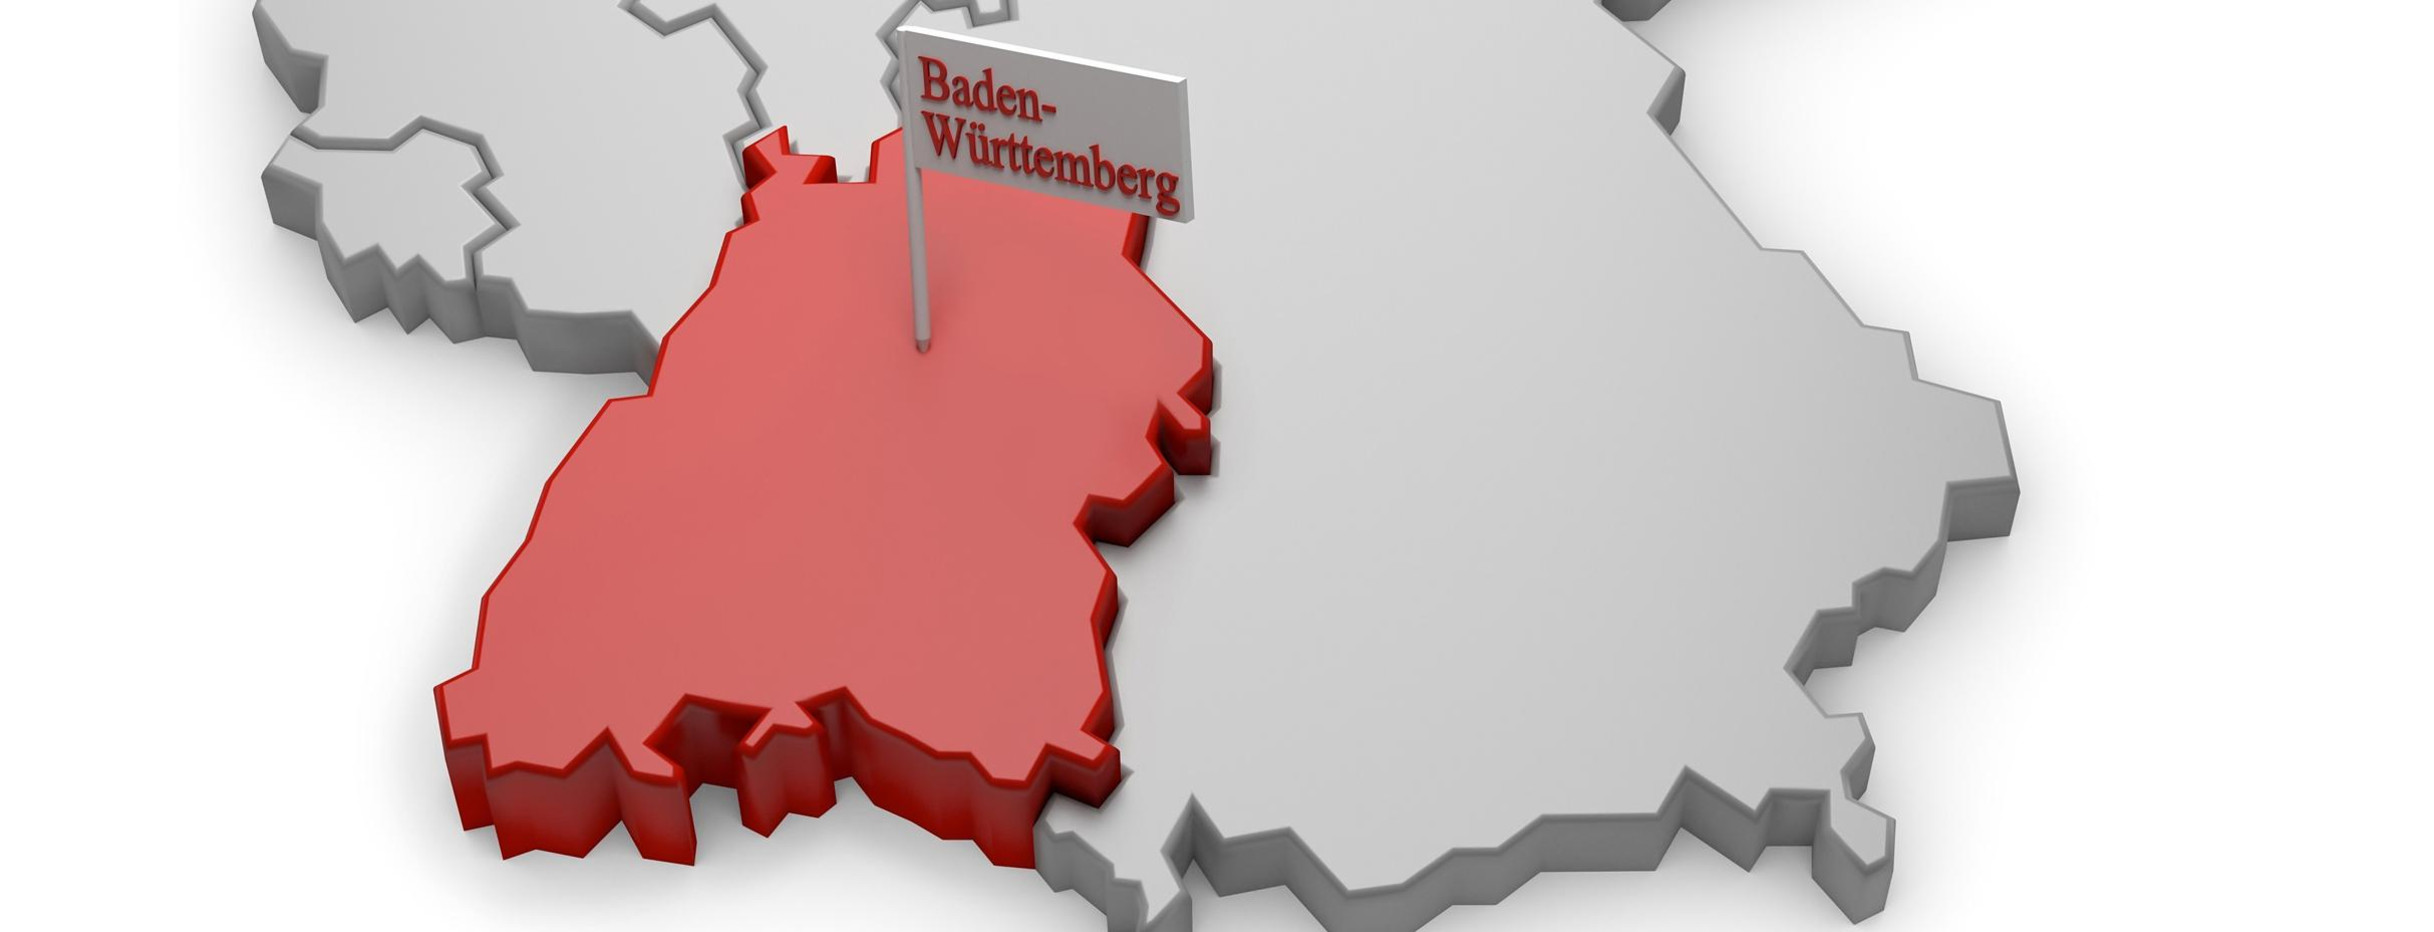 Deutschlandkarte mit Baden-Württemberg hervorgehoben